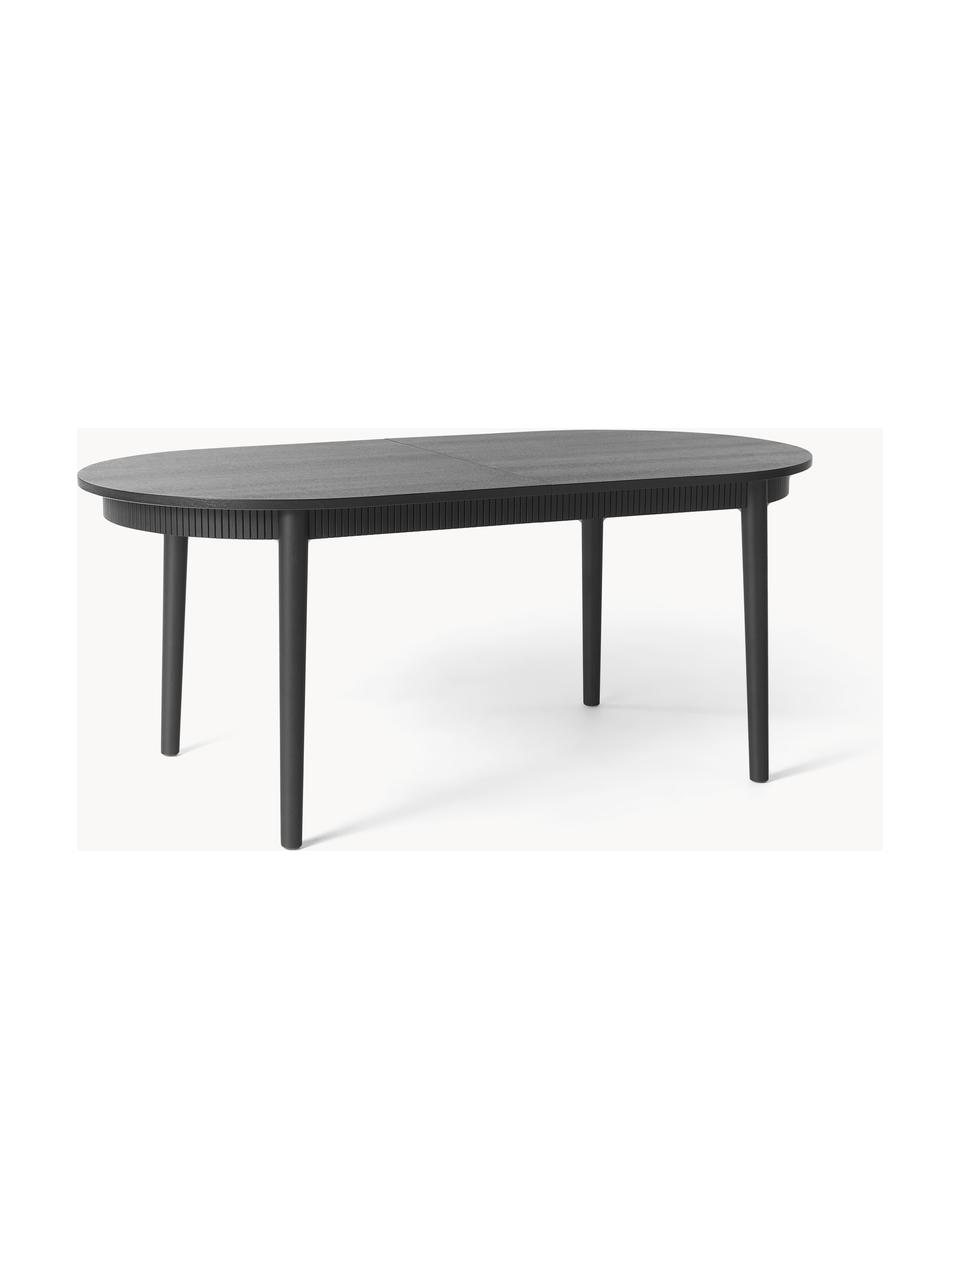 Table extensible Calary, 180 - 230 x 92 cm, Bois de chêne noir laqué, larg. 180 - 230 x prof. 92 cm